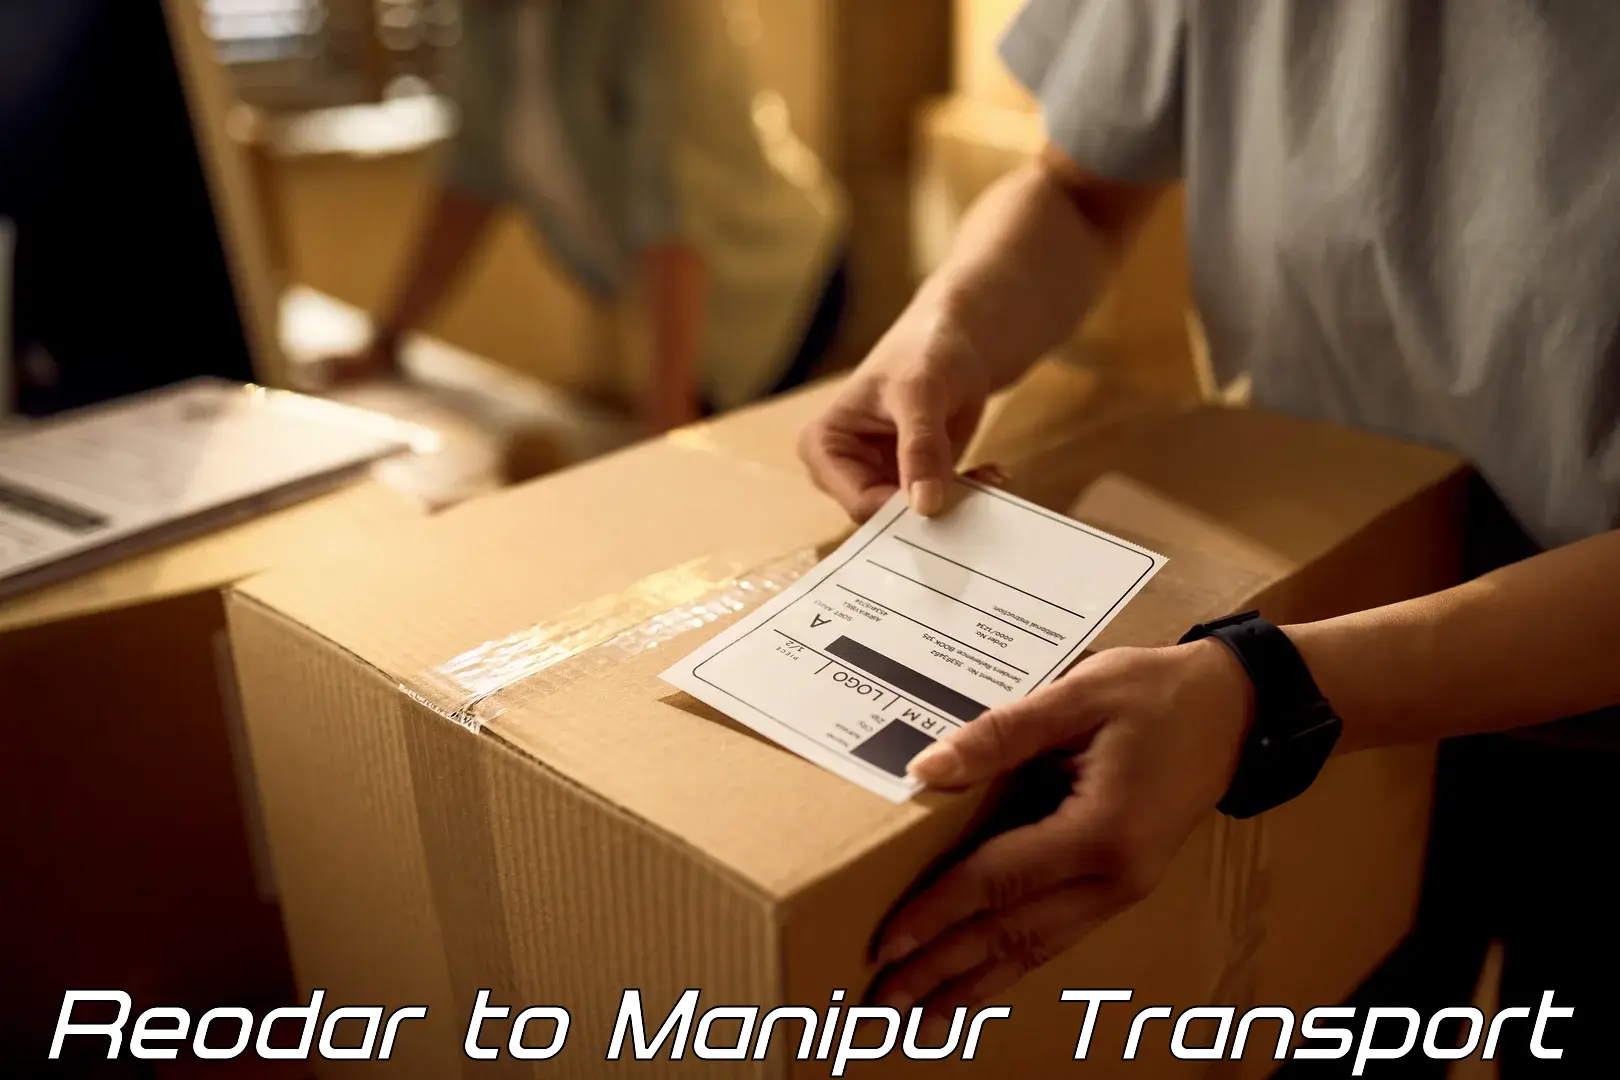 Furniture transport service Reodar to Moirang